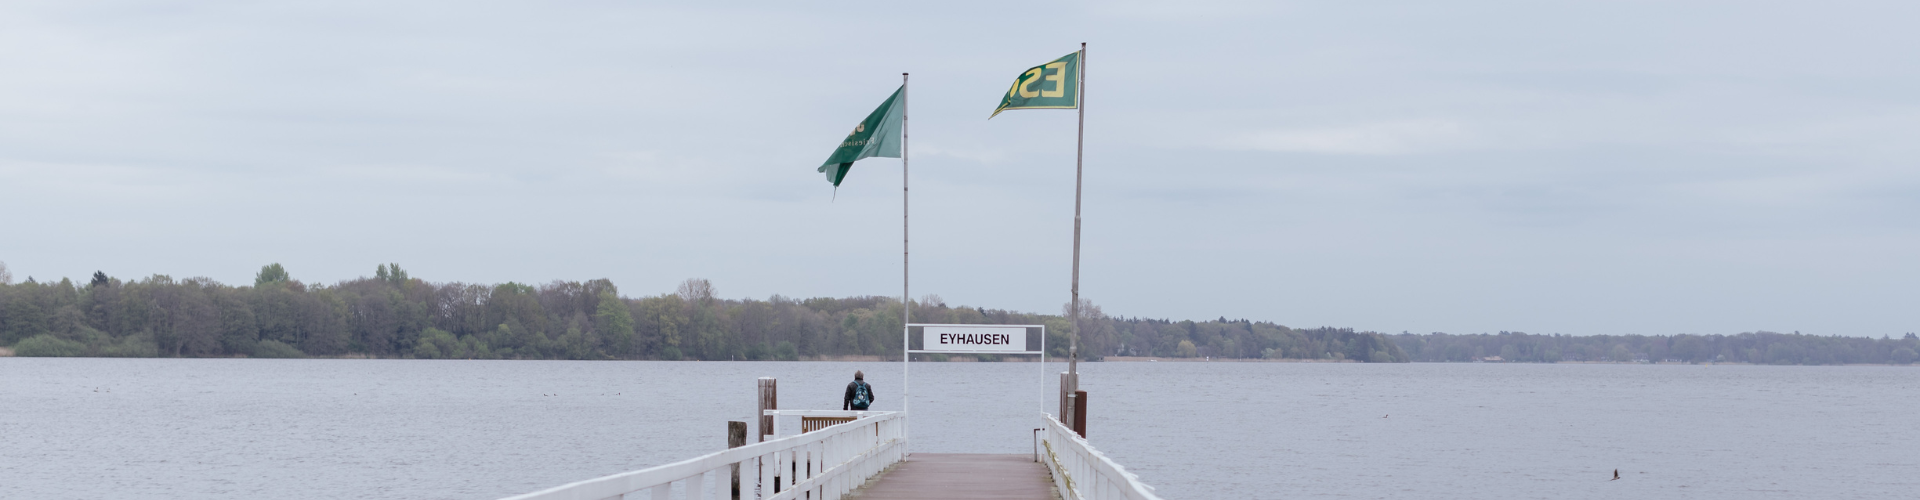 Draußen am Meer. Man sieht im Hintergrund einen Wald und einen langen Steg am Wasser. Auch sieht man zwei Flaggen und ein Schild mit der Aufschrift "Eyhausen"